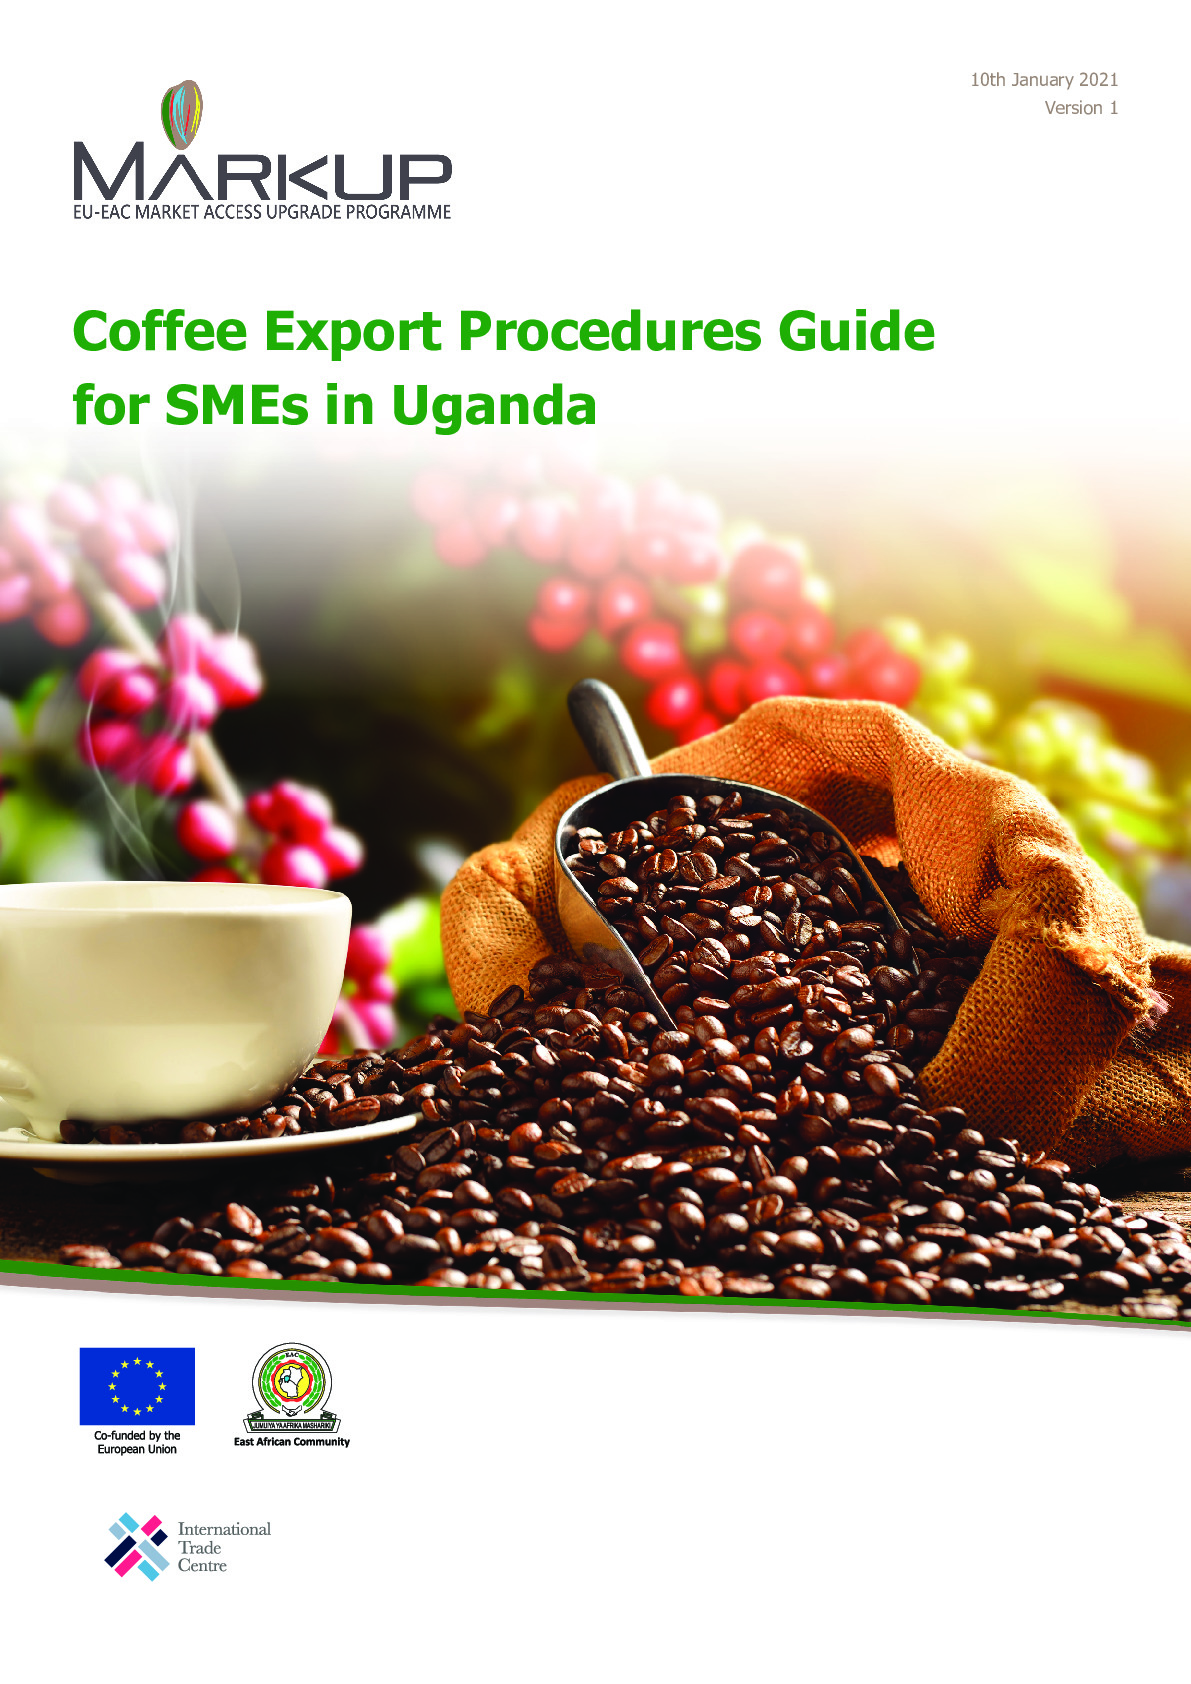 uganda_-_coffee_export_procedures_guide